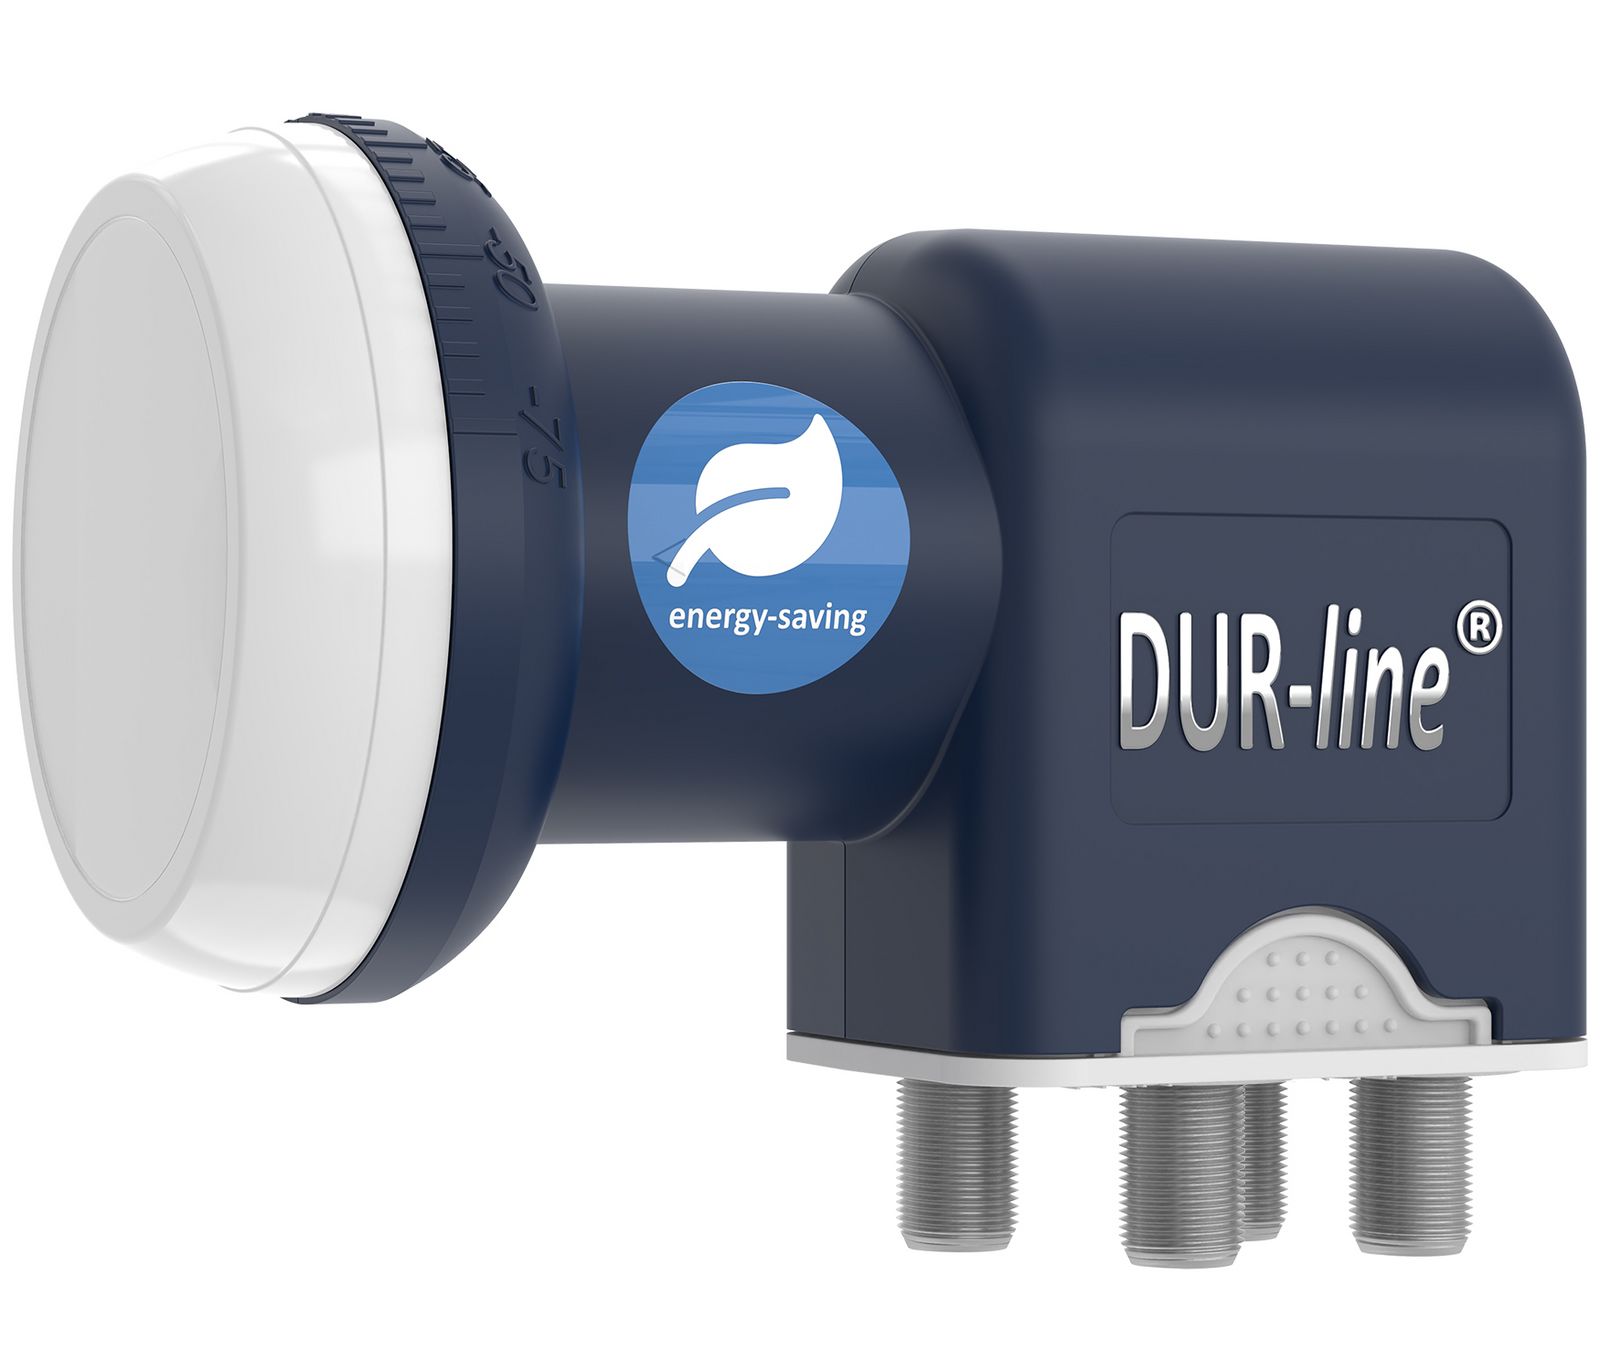 Quad LNB - DUR-line Blue ECO 11068 Stromspar-LNB - 4 Teilnehmer - Premium-Qualität - [ Test SEHR GUT *] 4-Fach digital Full HD 4K 3D